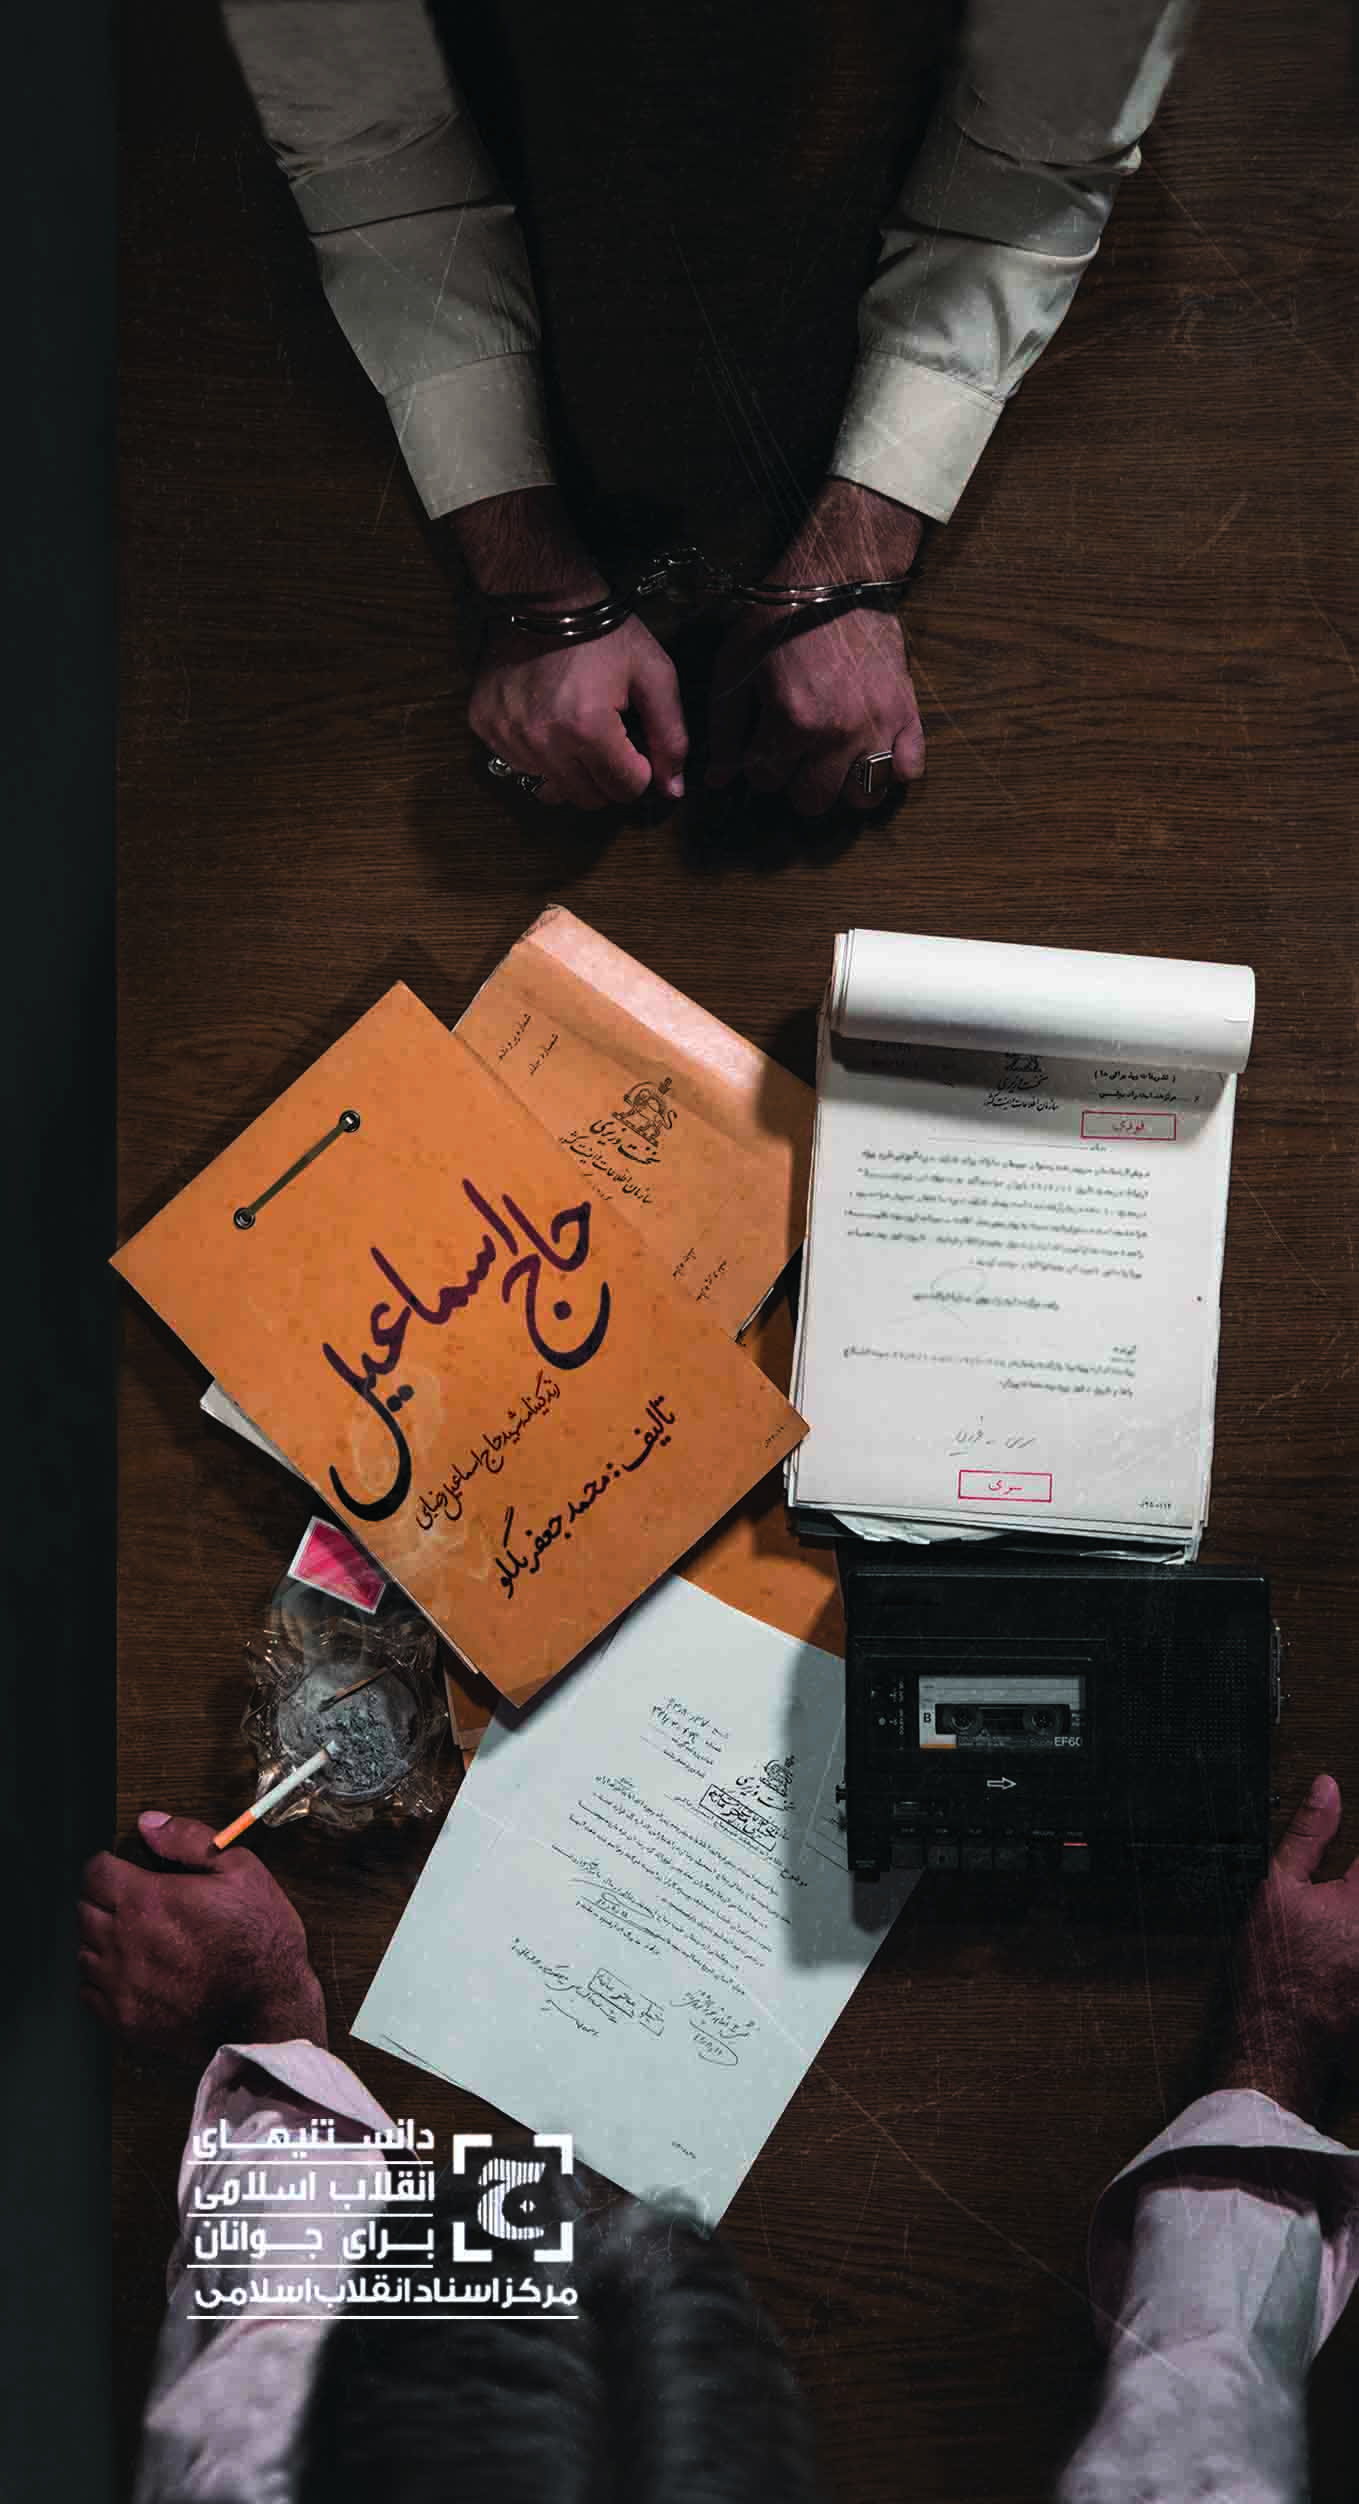 سه اثر مرکز اسناد انقلاب اسلامی در فهرست منابع کمک درسی وزارت آموزش و پرورش قرار گرفت